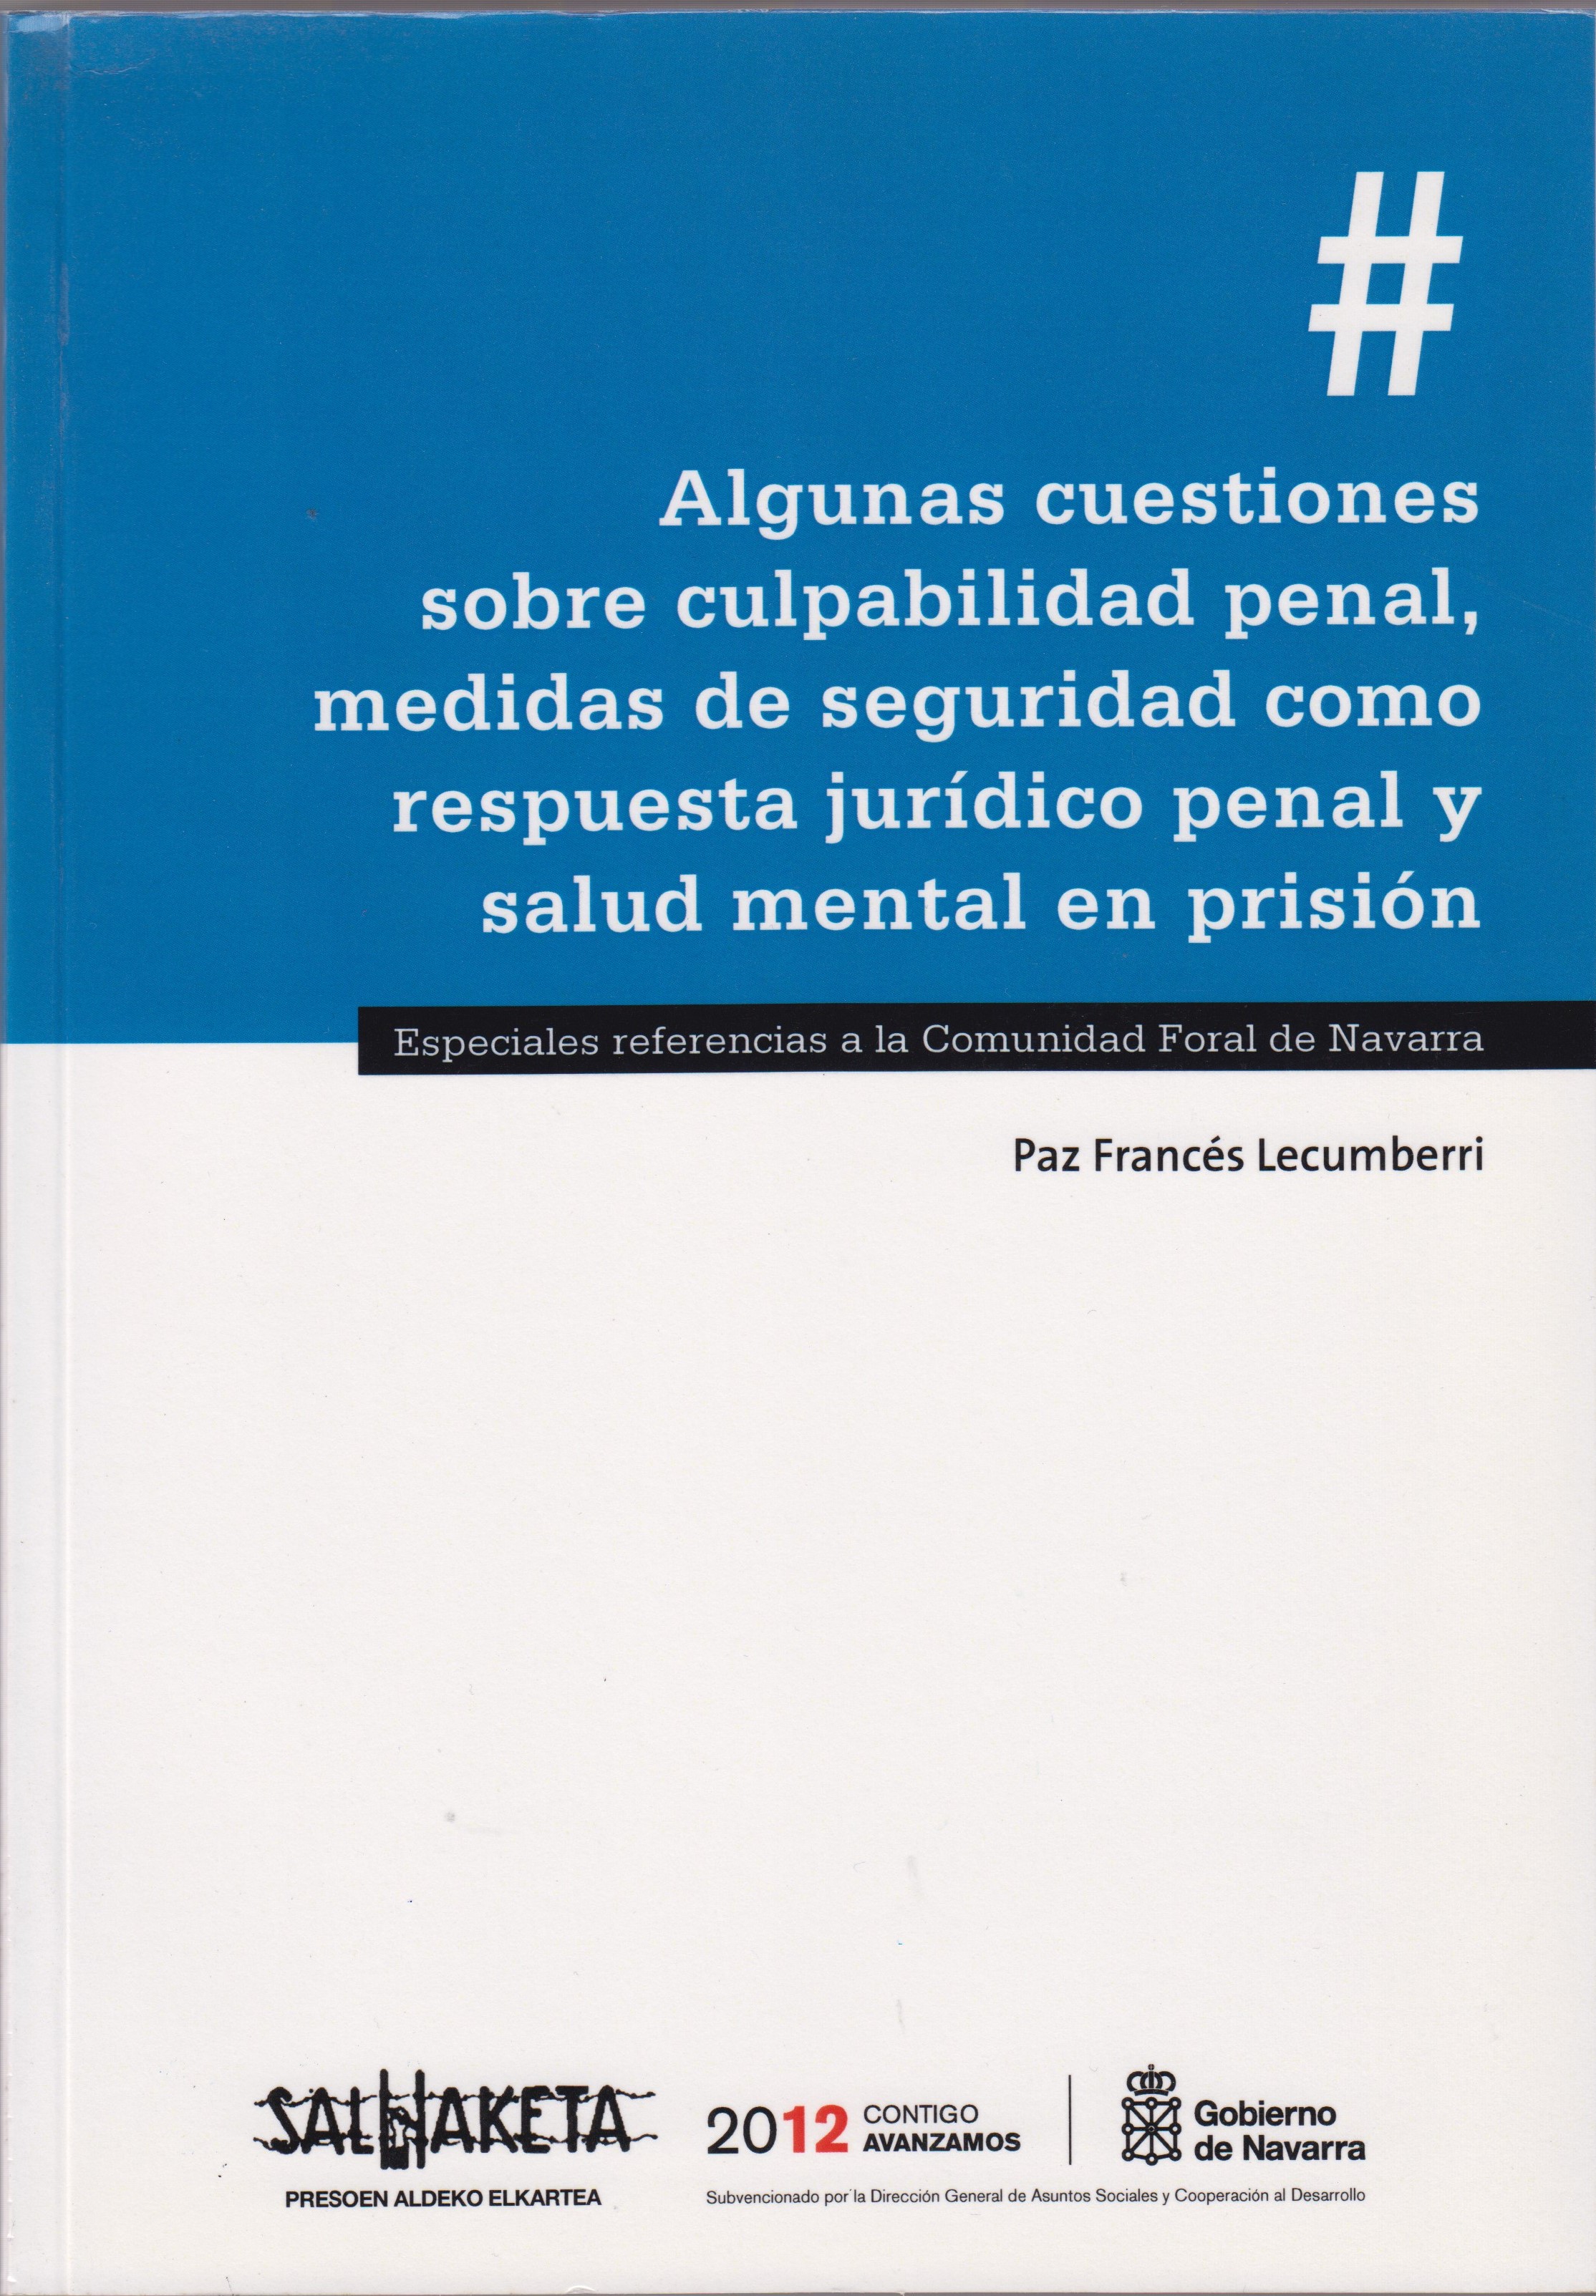 Algunas cuestiones sobre culpabilidad penal, medidas de seguridad como respuesta jurídico penal y salud mental en prisión